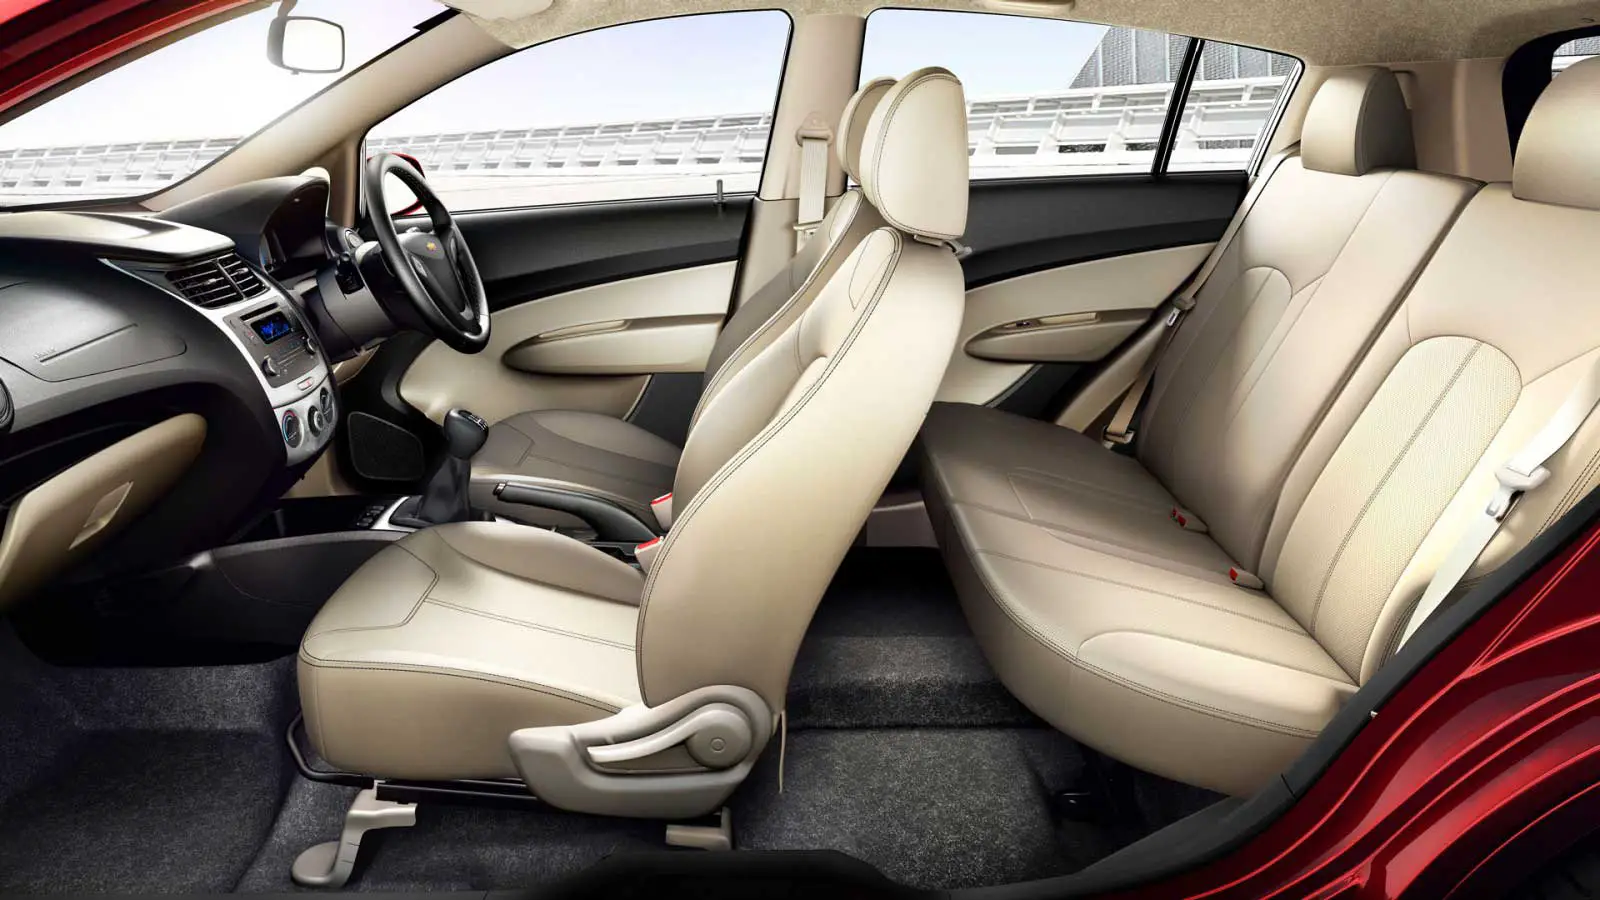 Chevrolet Sail Hatchback 1.3 LT ABS Interior